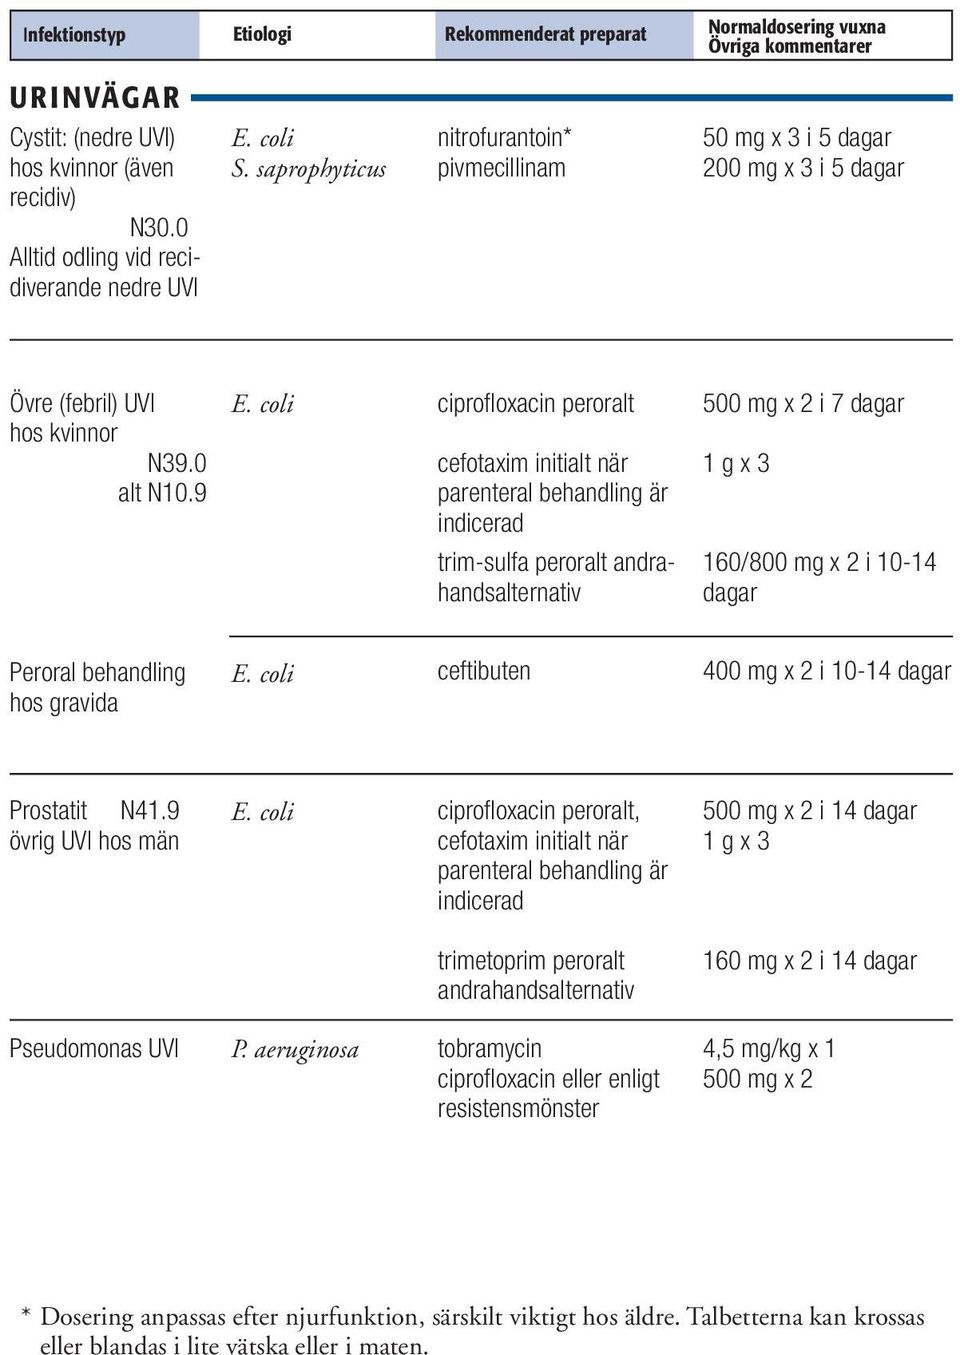 coli ciprofloxacin peroralt cefotaxim initialt när parenteral behandling är indicerad 500 mg x 2 i 7 dagar trim-sulfa peroralt andrahandsalternativ 160/800 mg x 2 i 10-14 dagar Peroral behandling hos